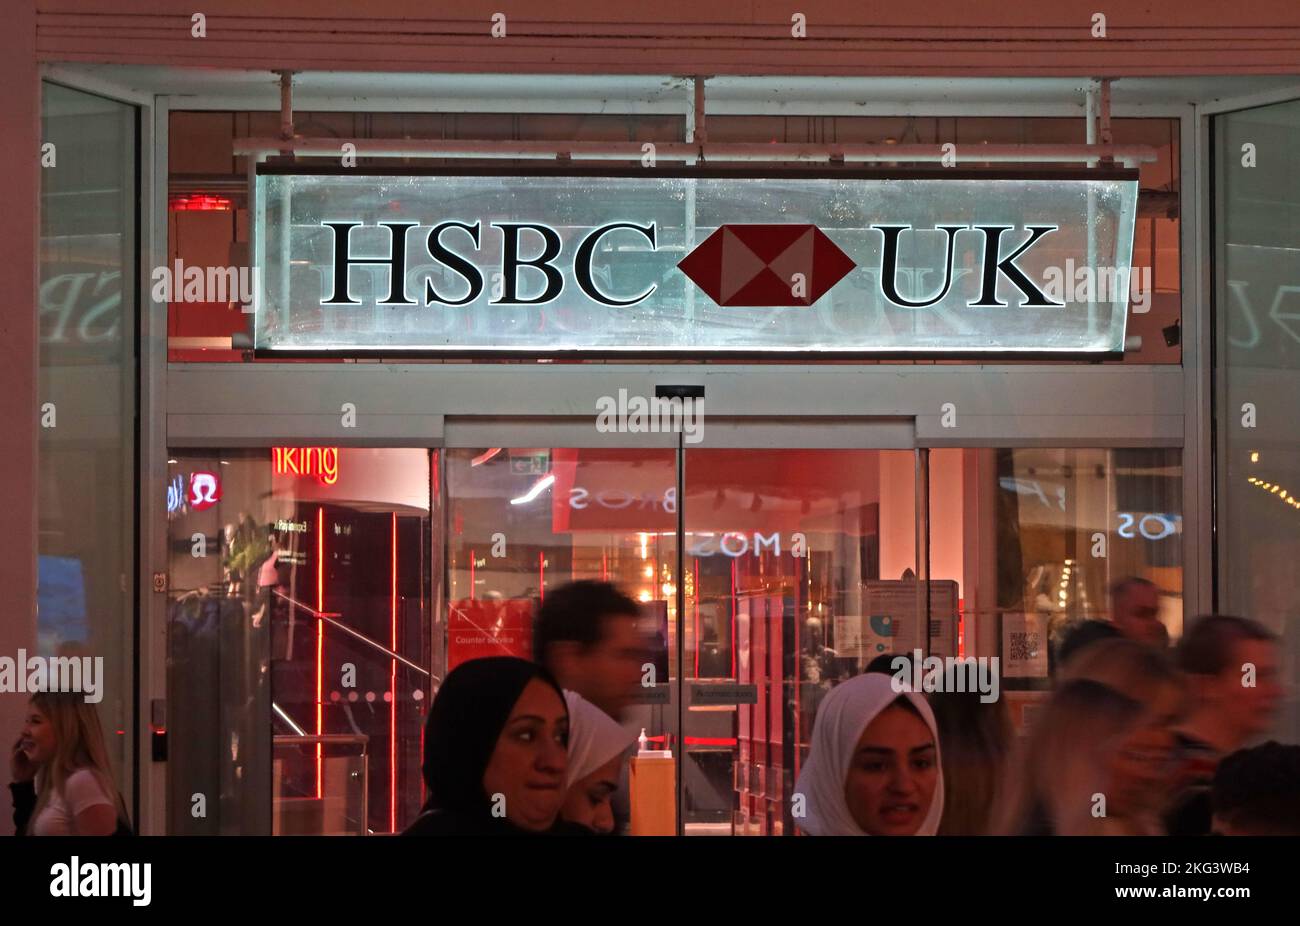 HSBC - Hong Kong Shanghai Banking Corporation, succursale britannique, 2-4 St Anns Square, Manchester, Angleterre, Royaume-Uni, M2 7HD heures sur 24 Banque D'Images